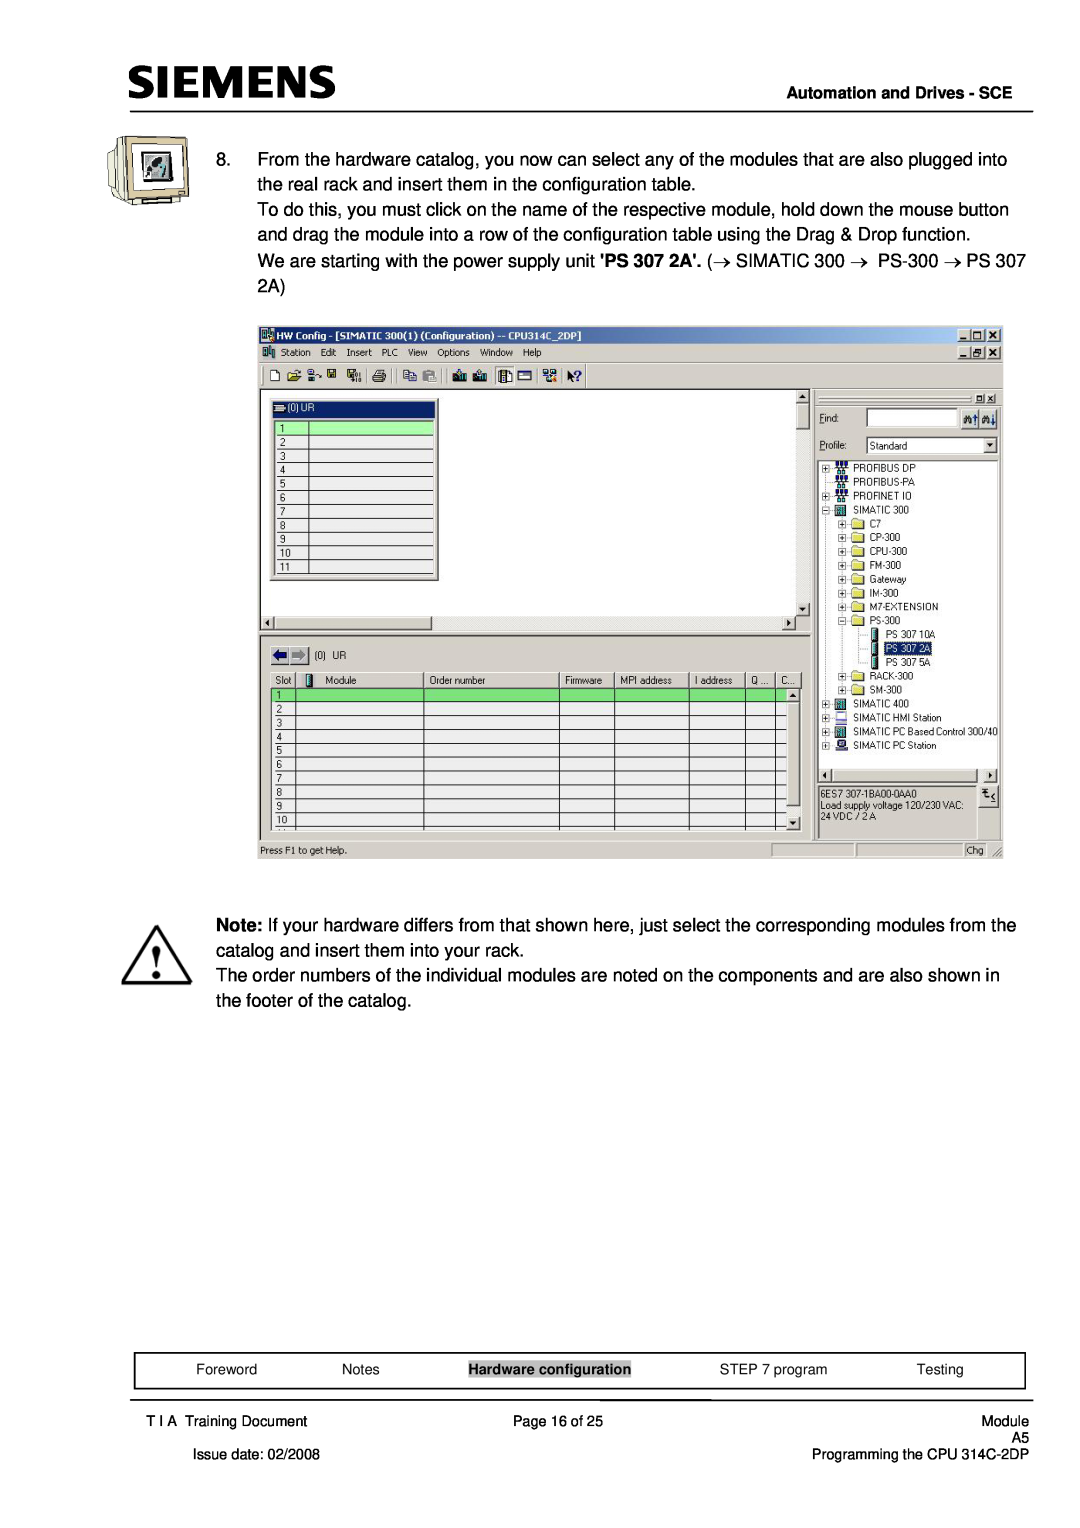 Siemens programming the cpu 314c-2dp manual 